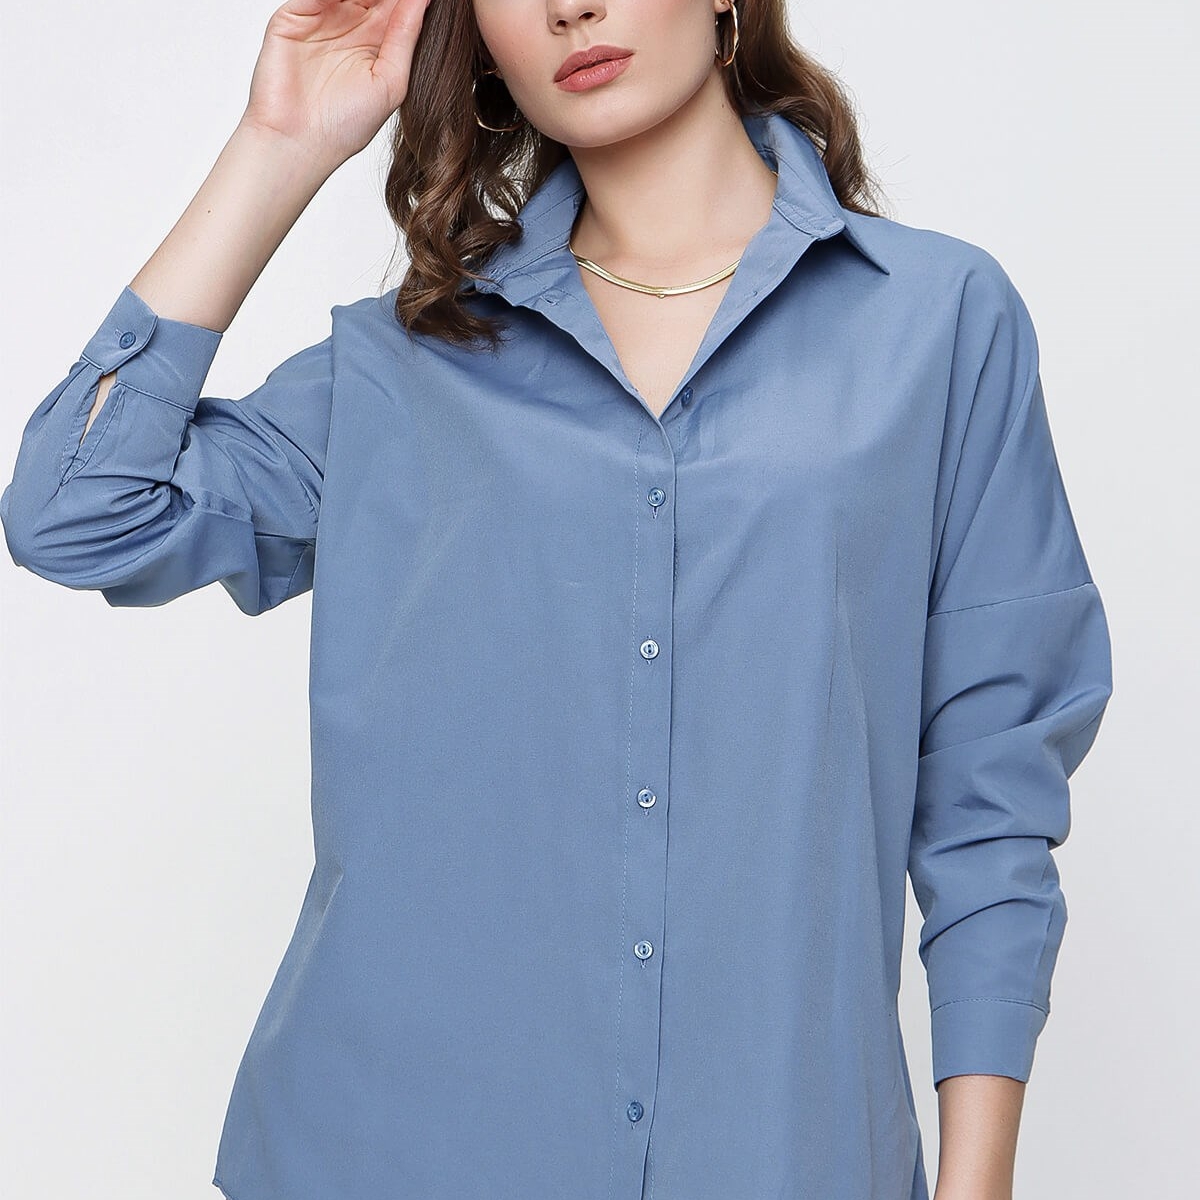 Flo Kadın Mavi Geniş Yaka Düz Gömlek. 6